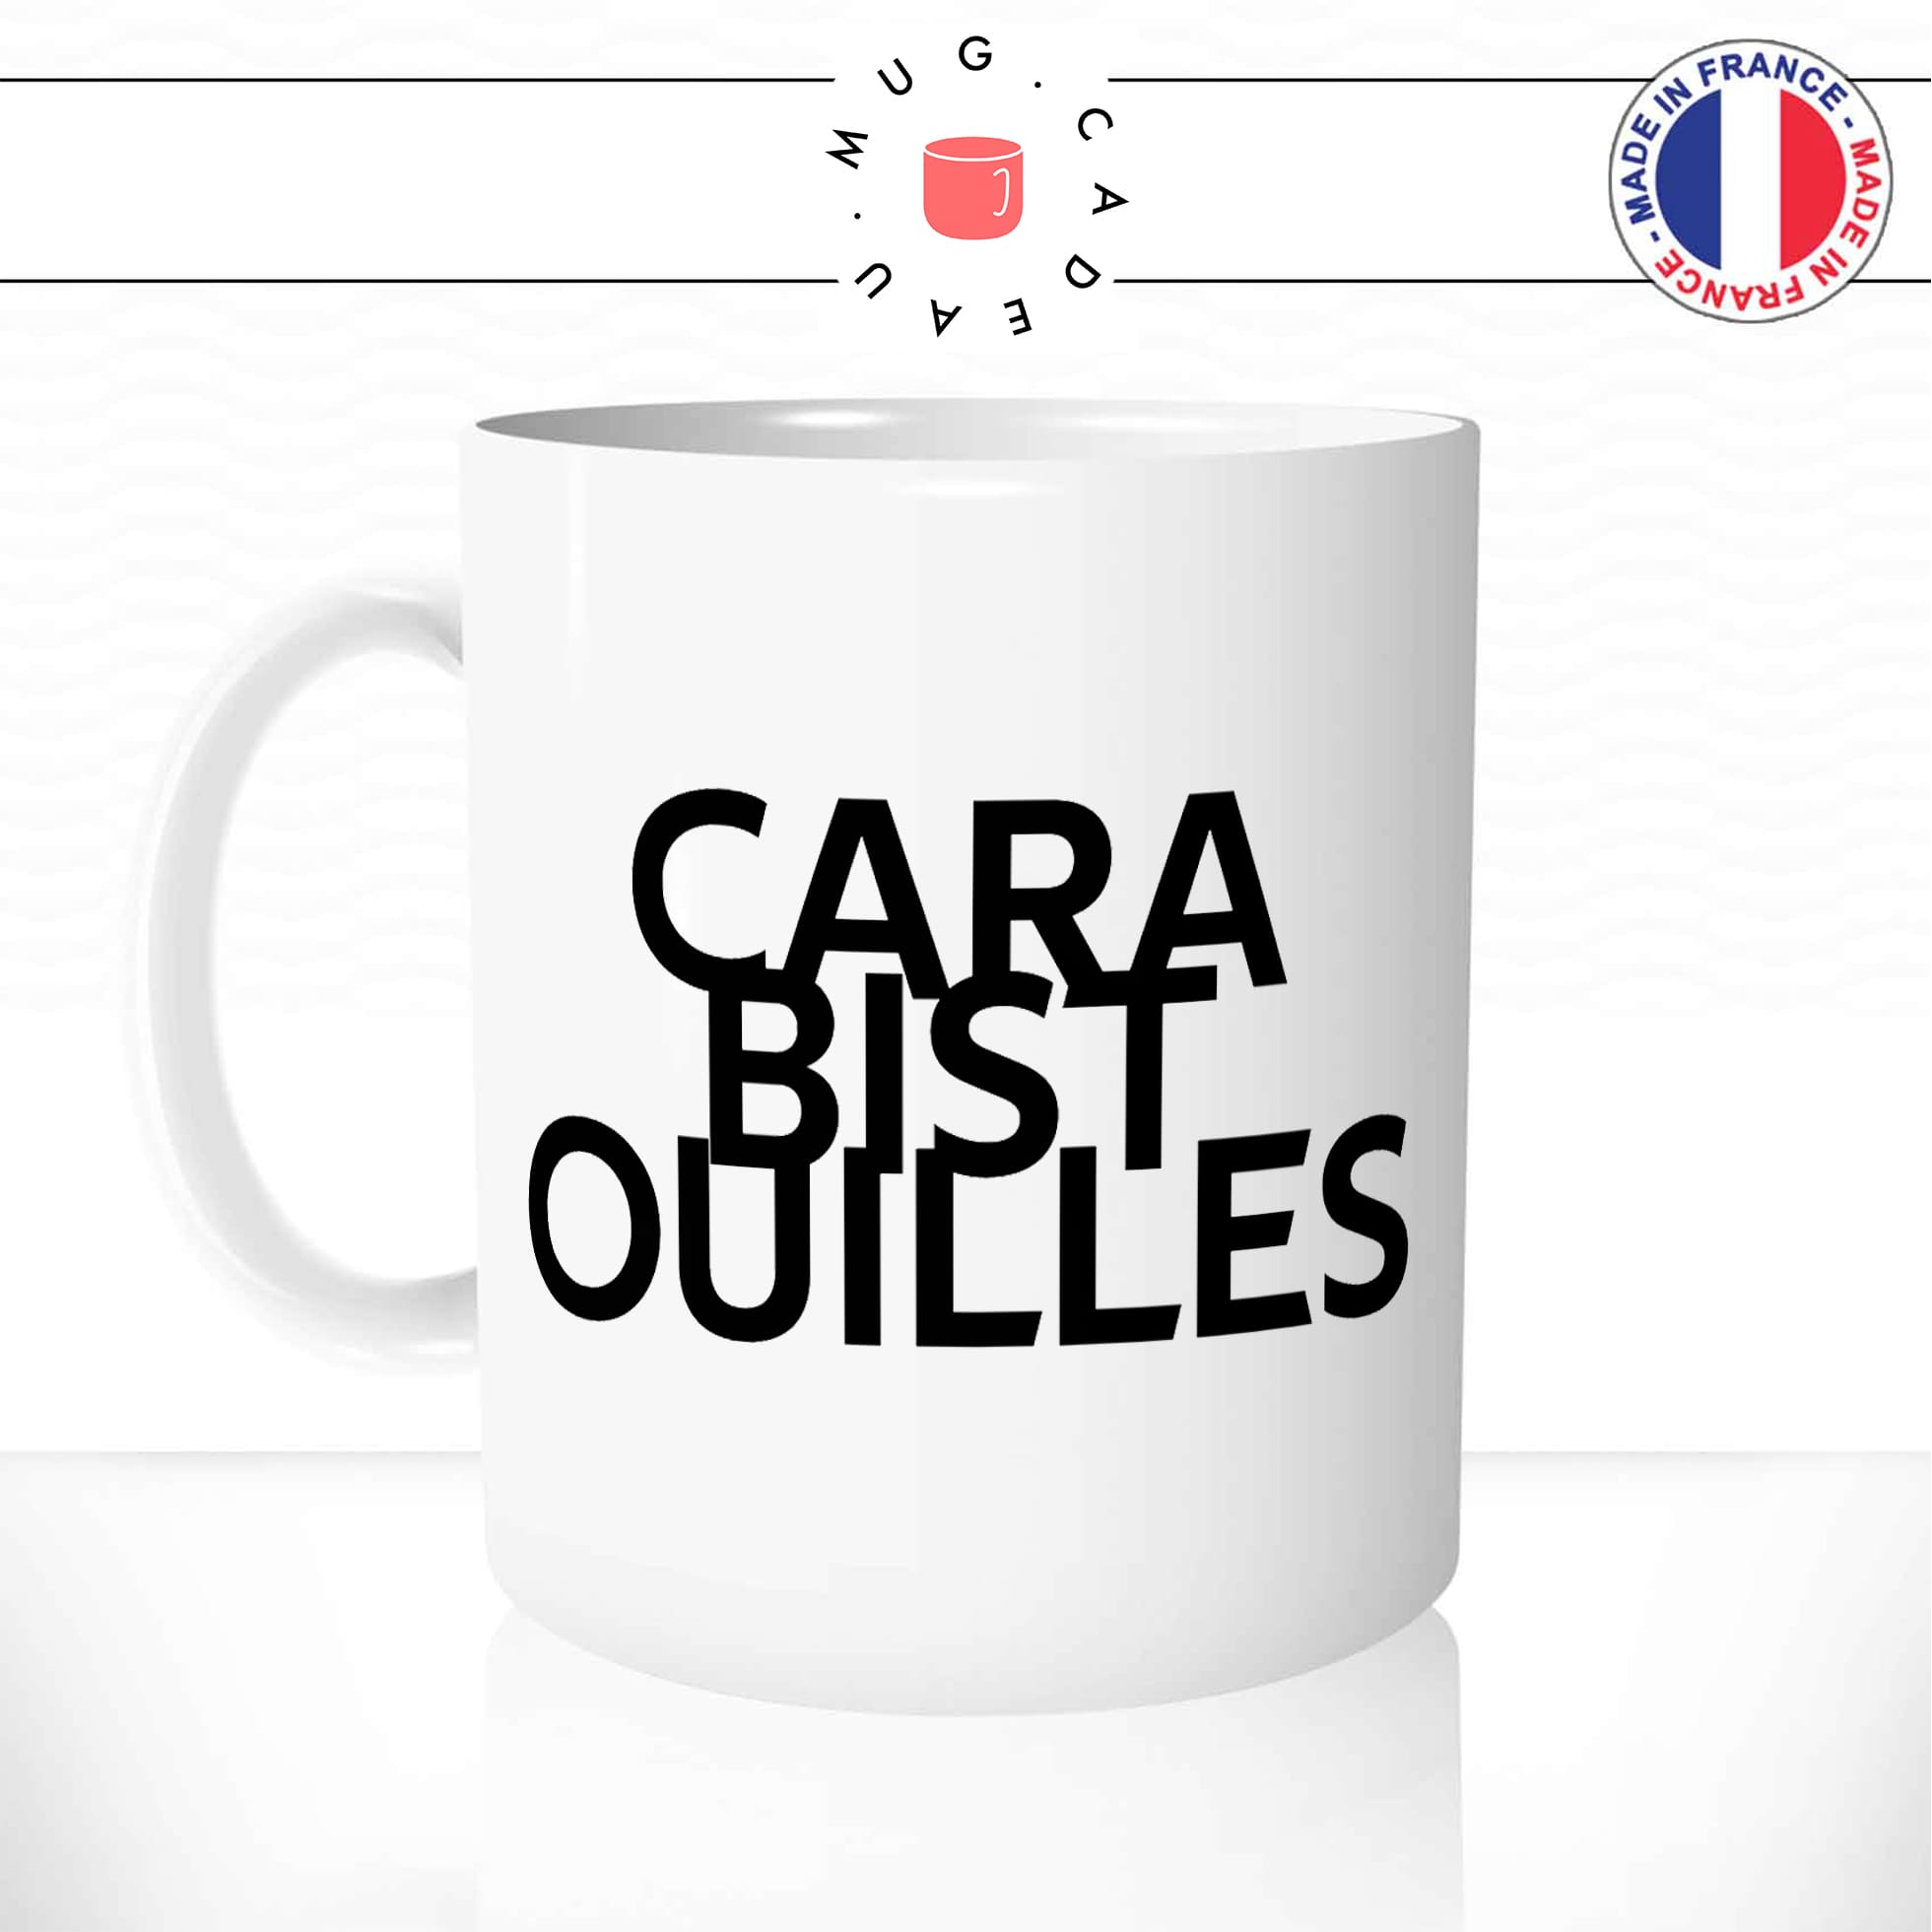 mug-tasse-blanc-carabistouilles-expressions-francaise-betises-conneries-meme-internet-humour-fun-idée-cadeau-originale-cool